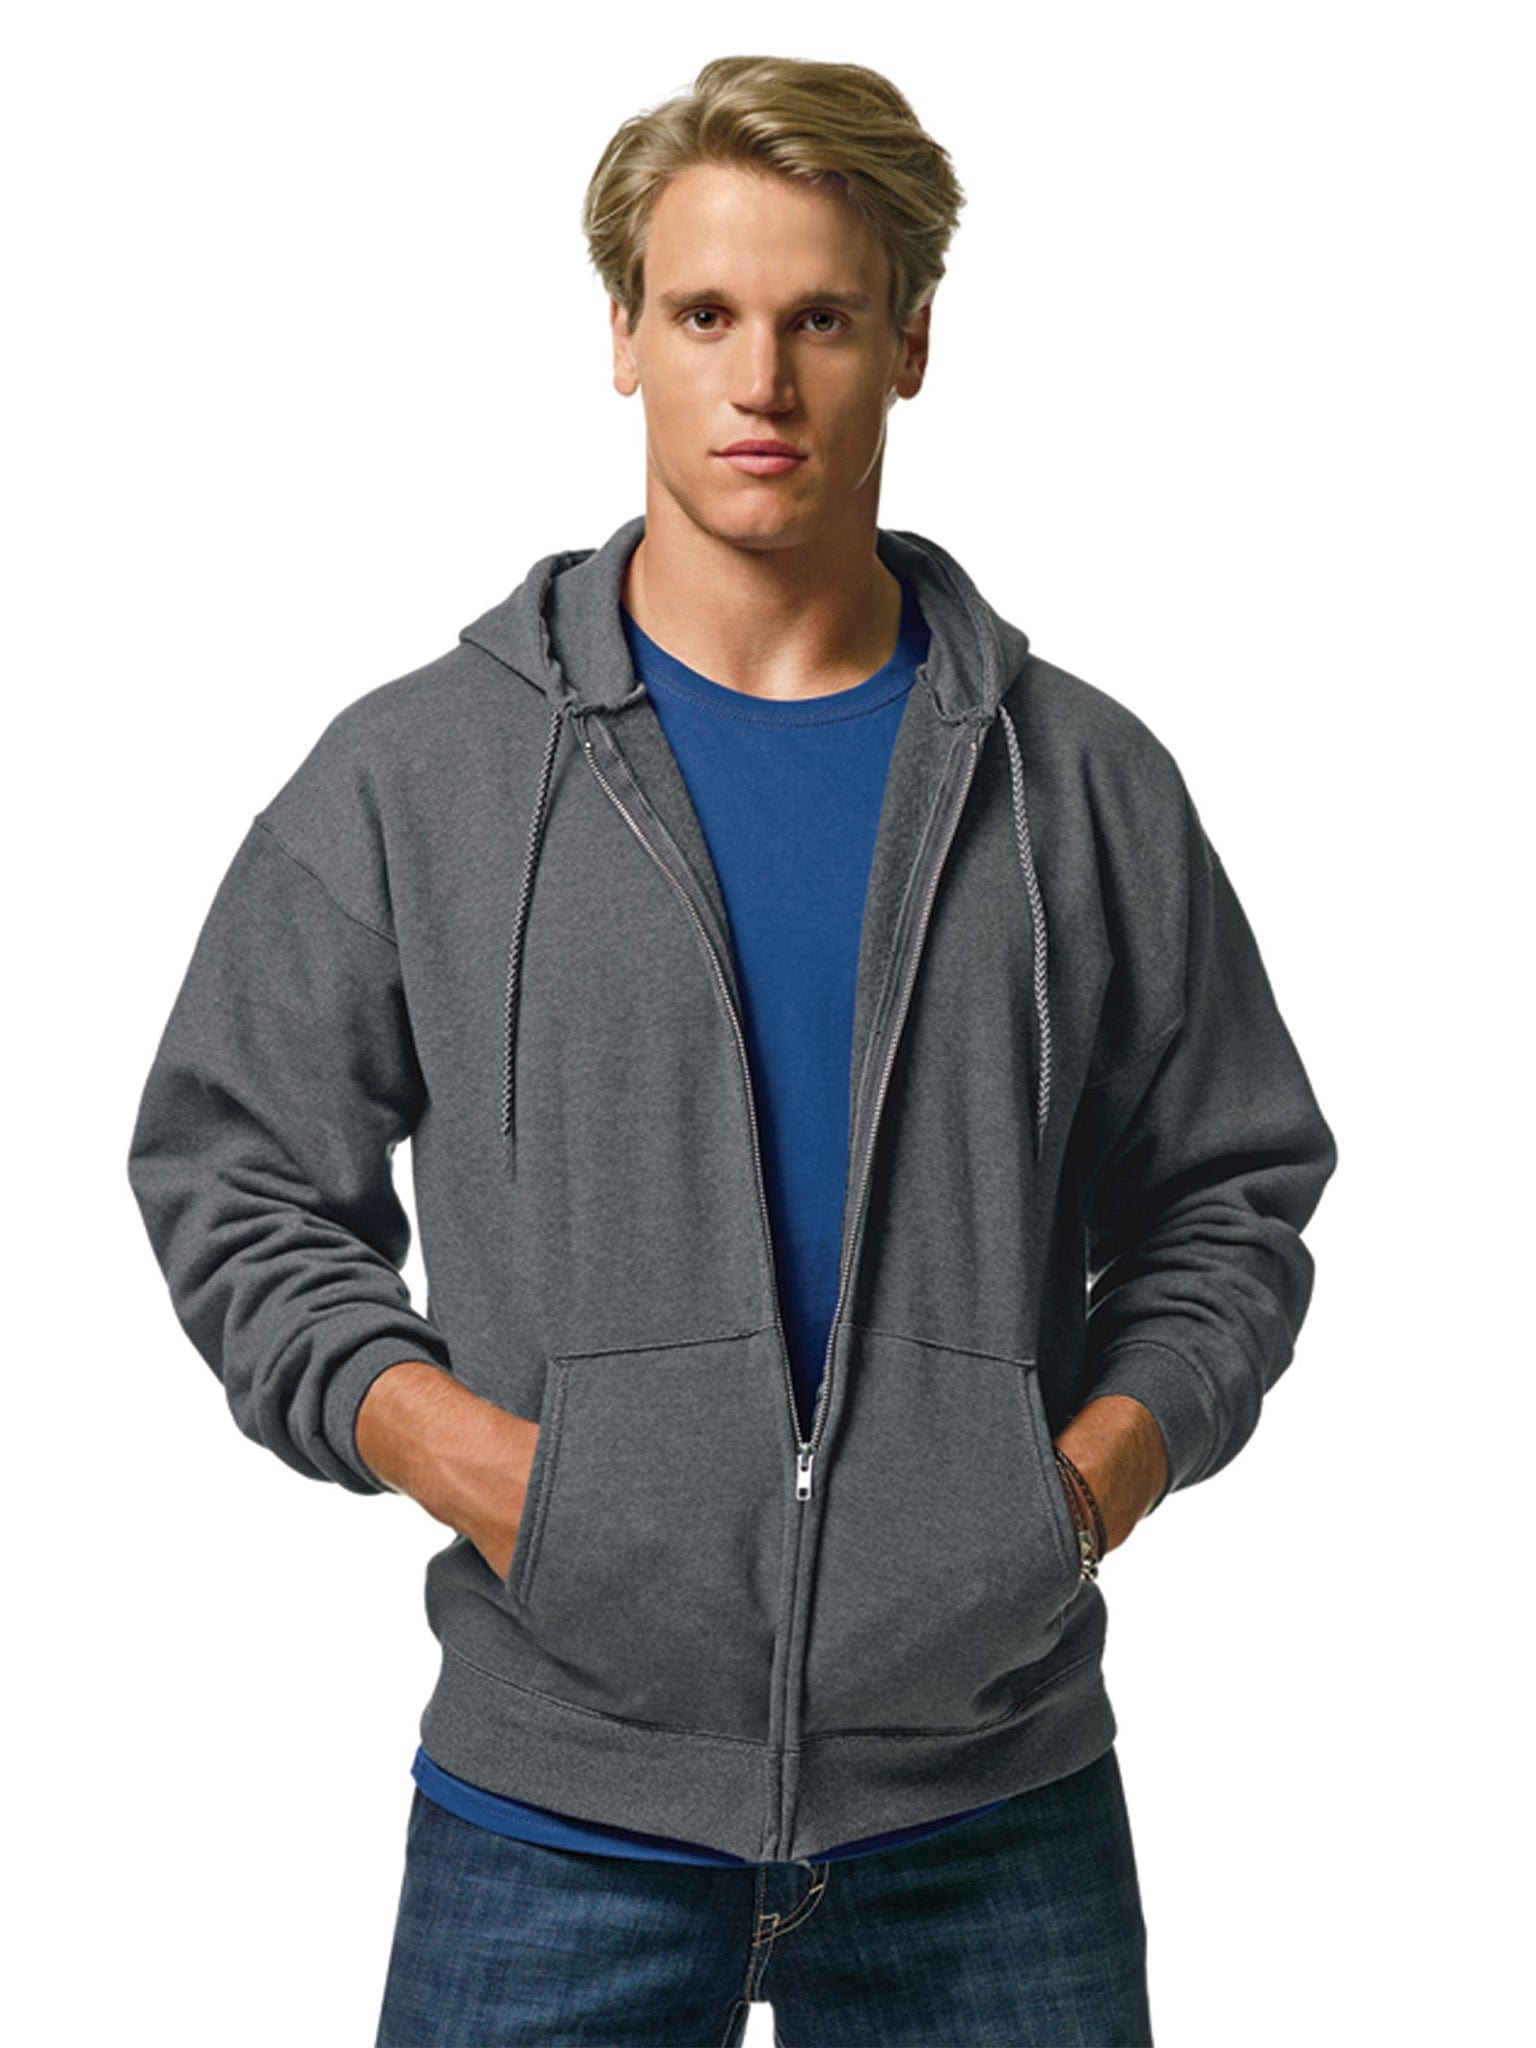 Custom Hanes Ultimate Cotton Full-Zip Hooded Sweatshirt - Design Online